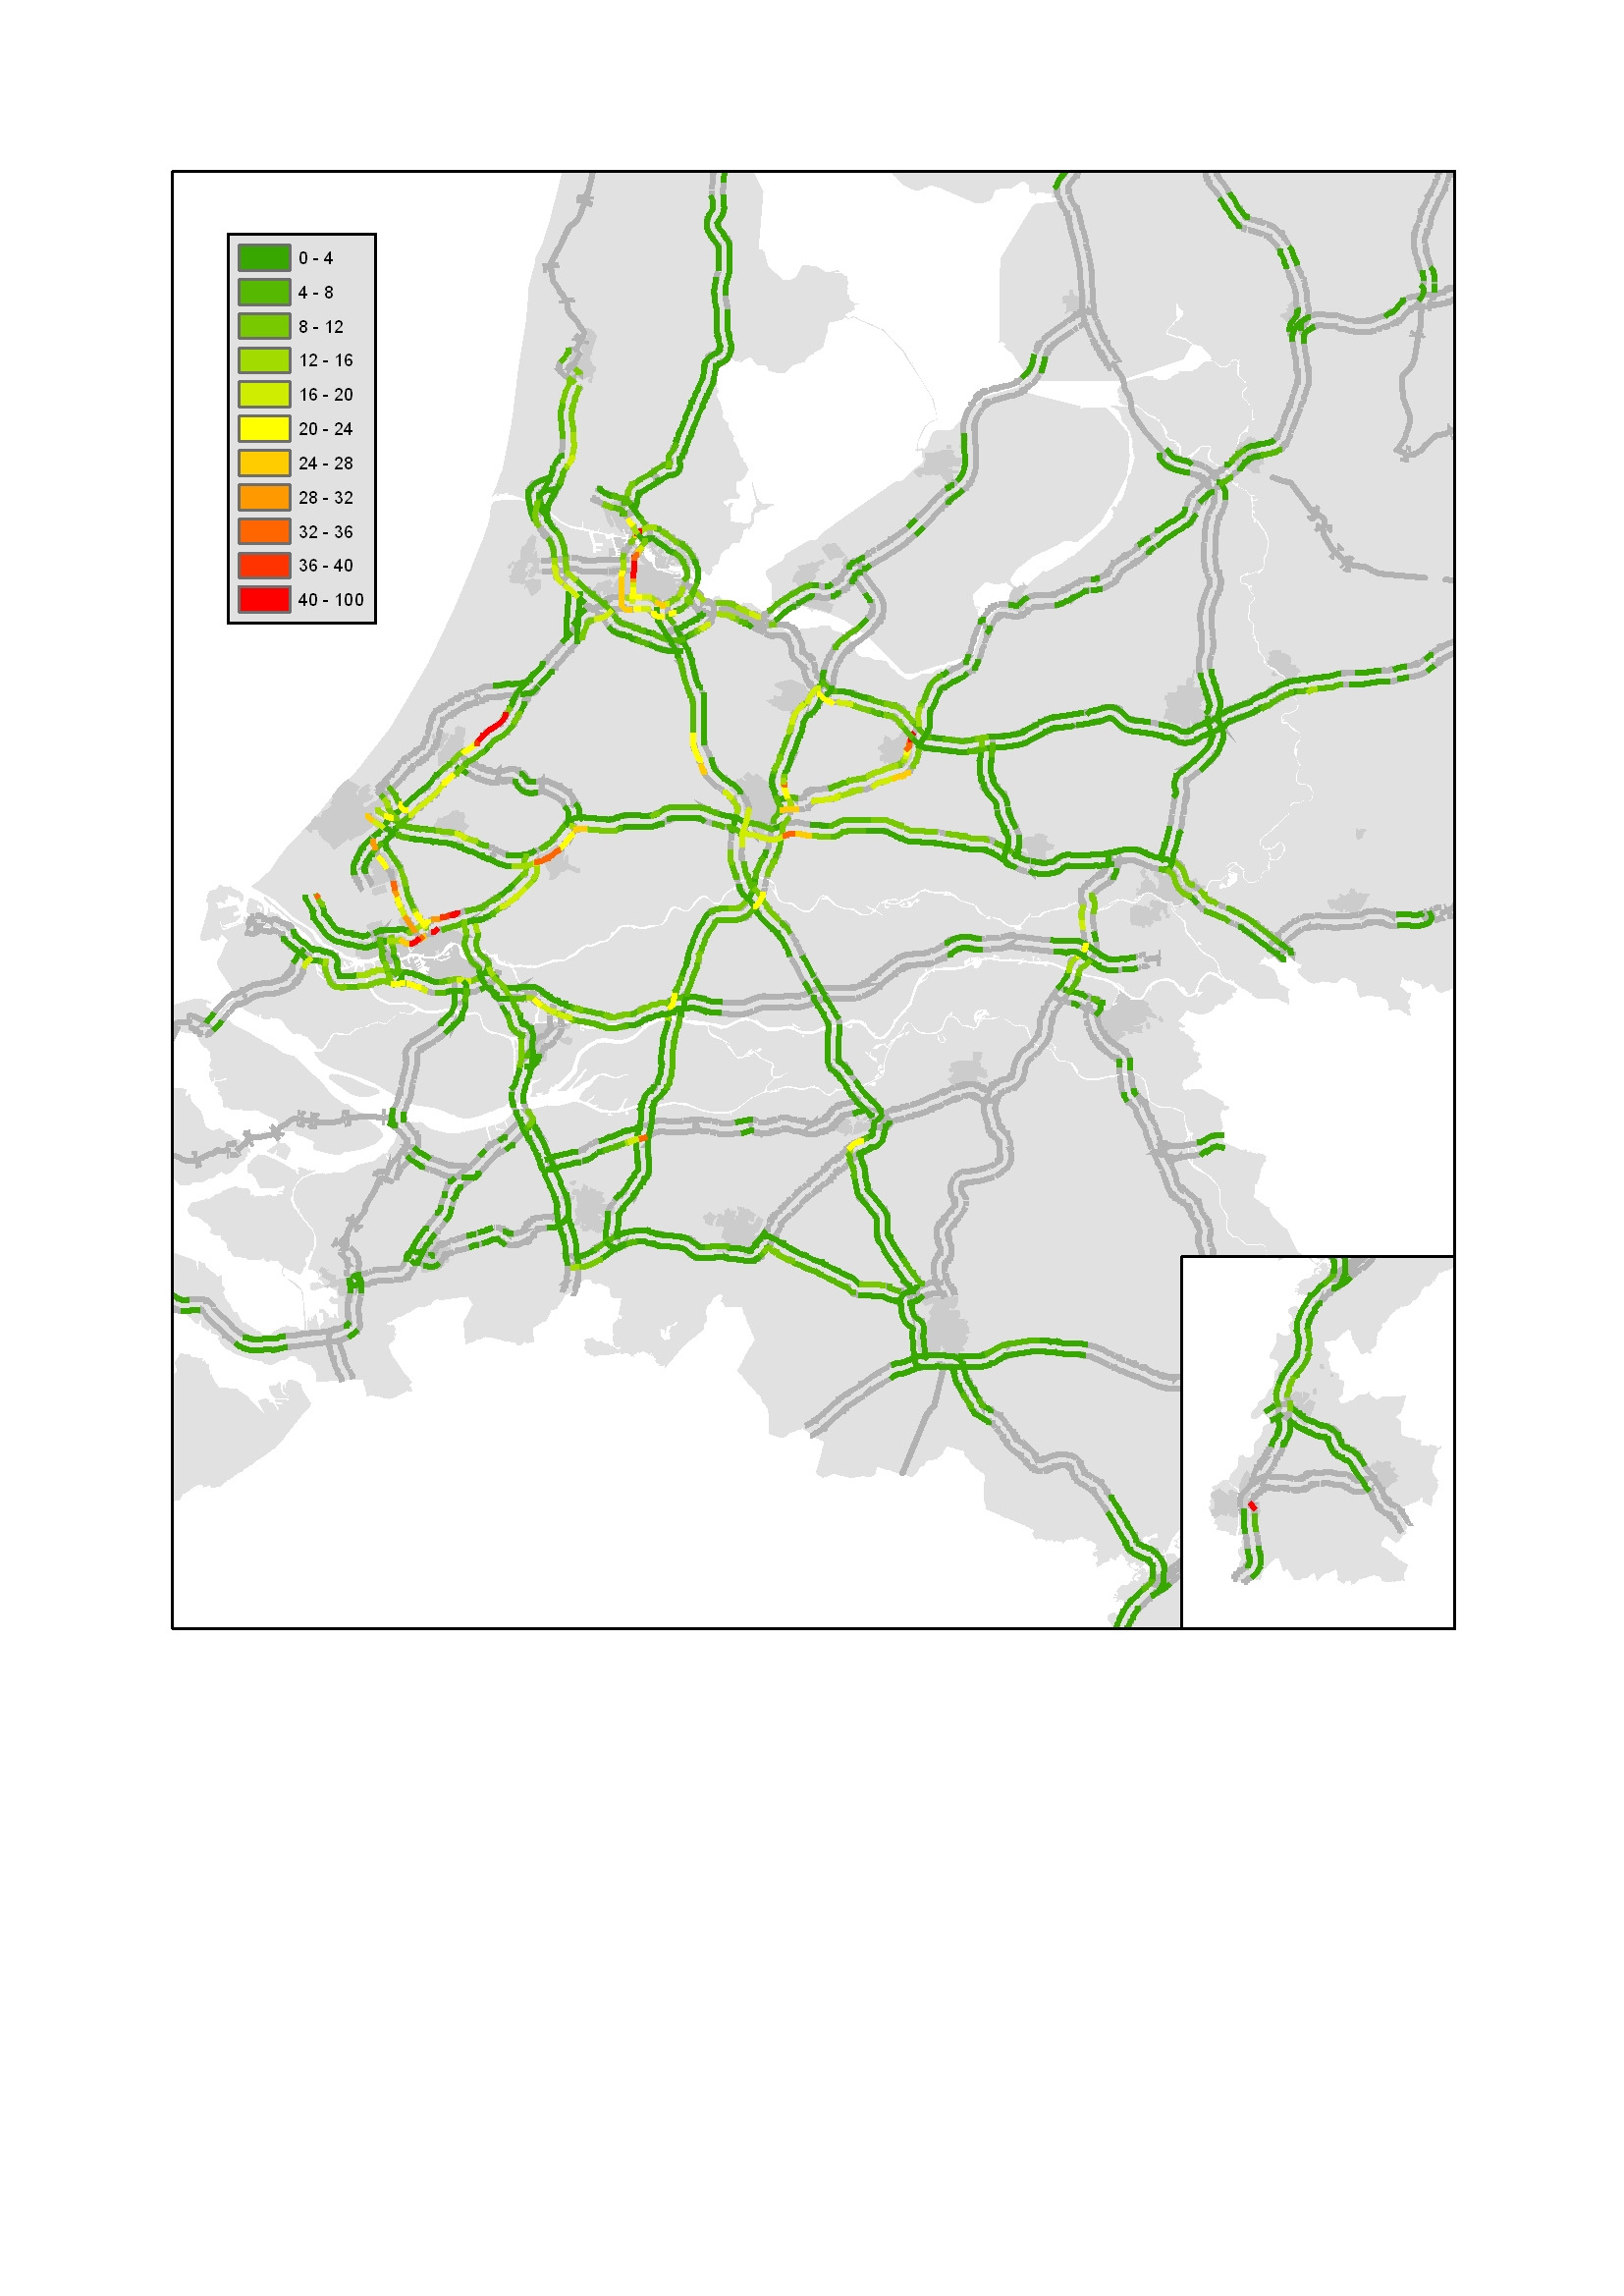 2.3 Overzichtskaart van locaties met de bijdrage aan het jaarreistijdverlies Donkerrood gekleurde locaties leveren de grootste bijdrage aan het jaarreistijdverlies uitgedrukt in voertuigverliesuren.